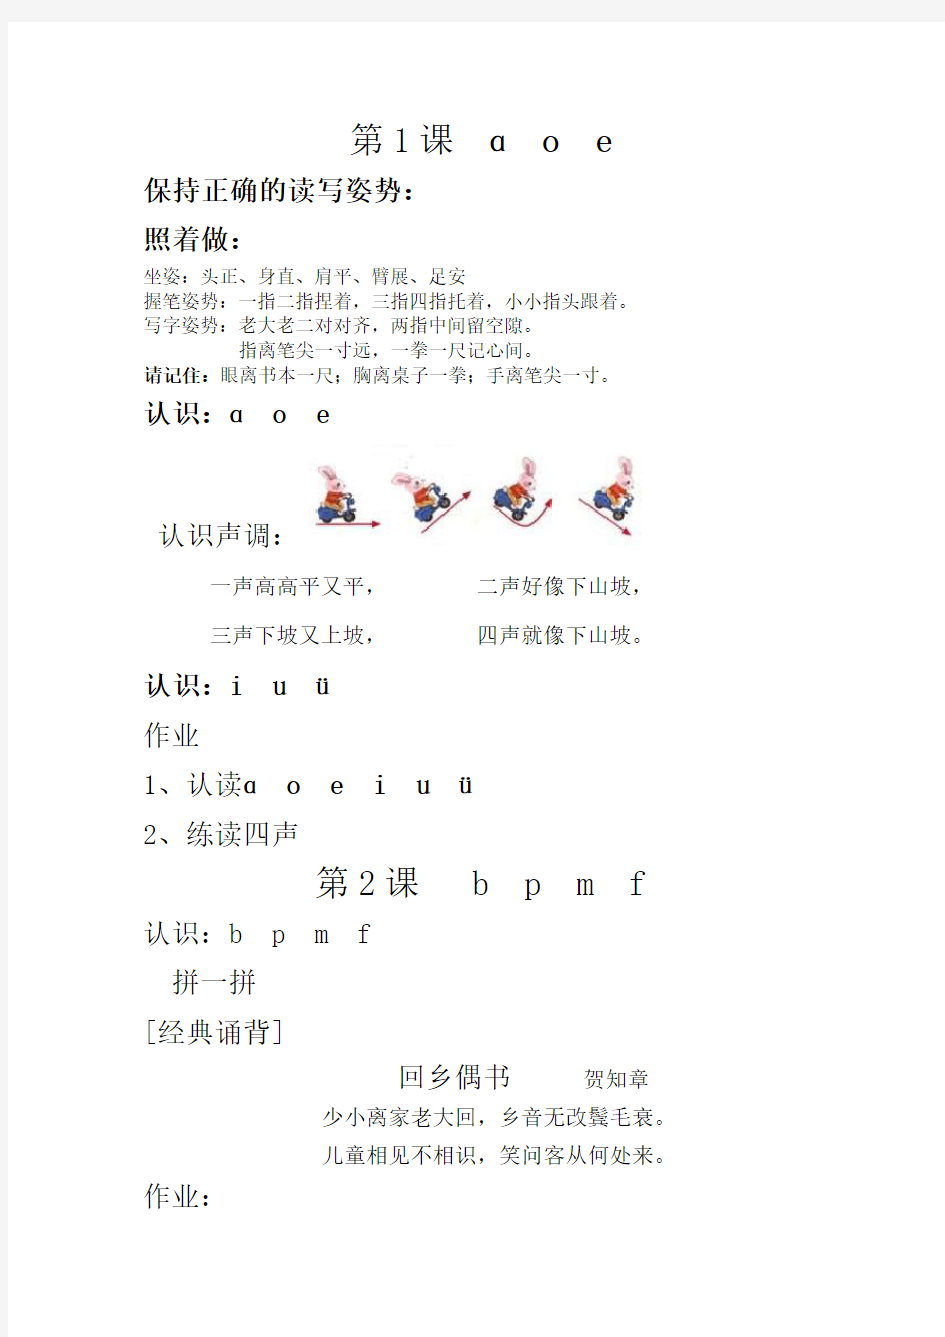 完整汉语拼音教材32页彩图版 (1)